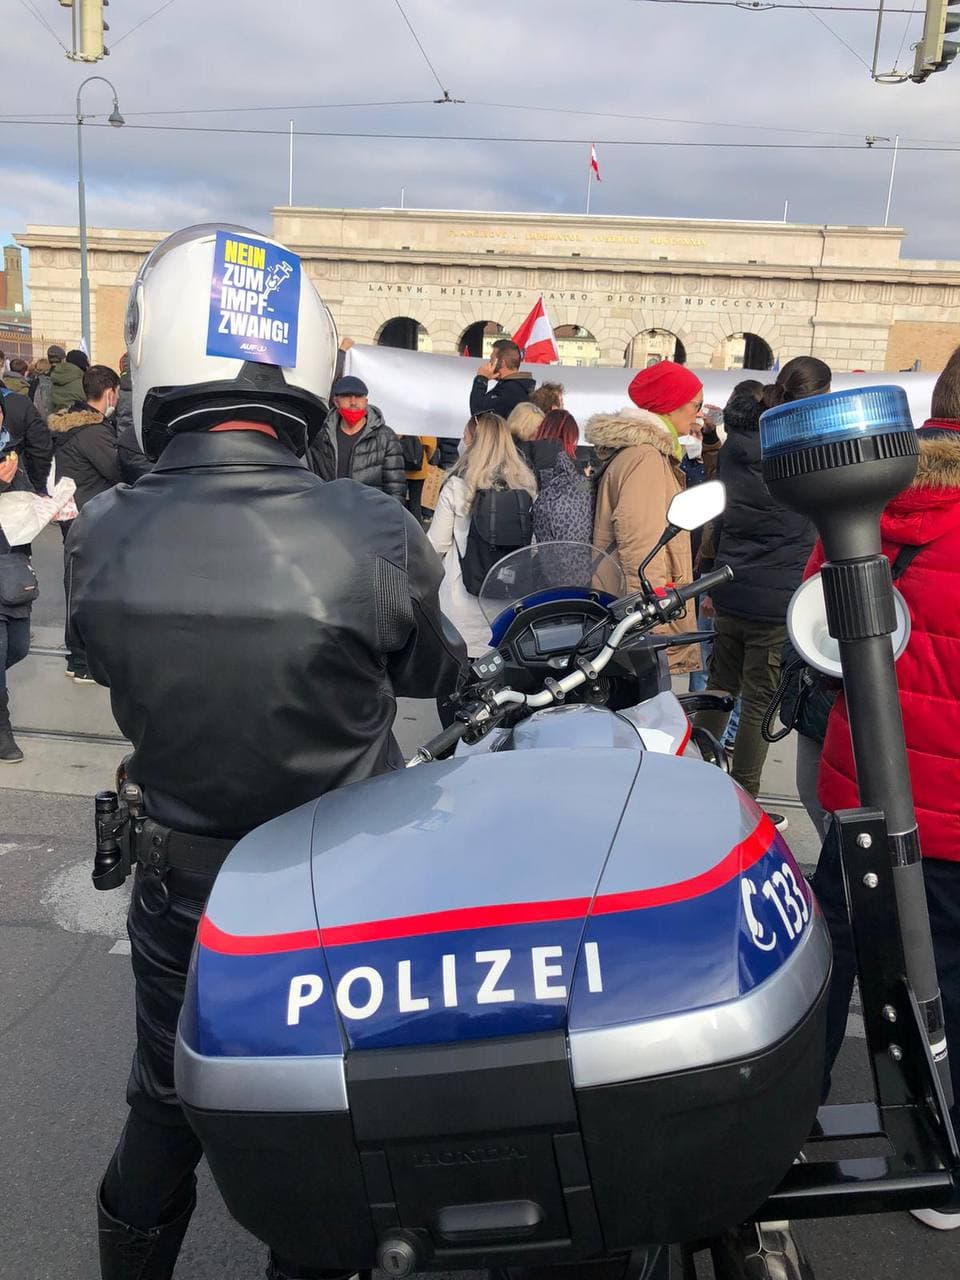 Widerstand der Polizei an
                    der Demo in Wien 20.11.2021: Polizist mit Kleber am
                    Helm "Nein zum Impfzwang"